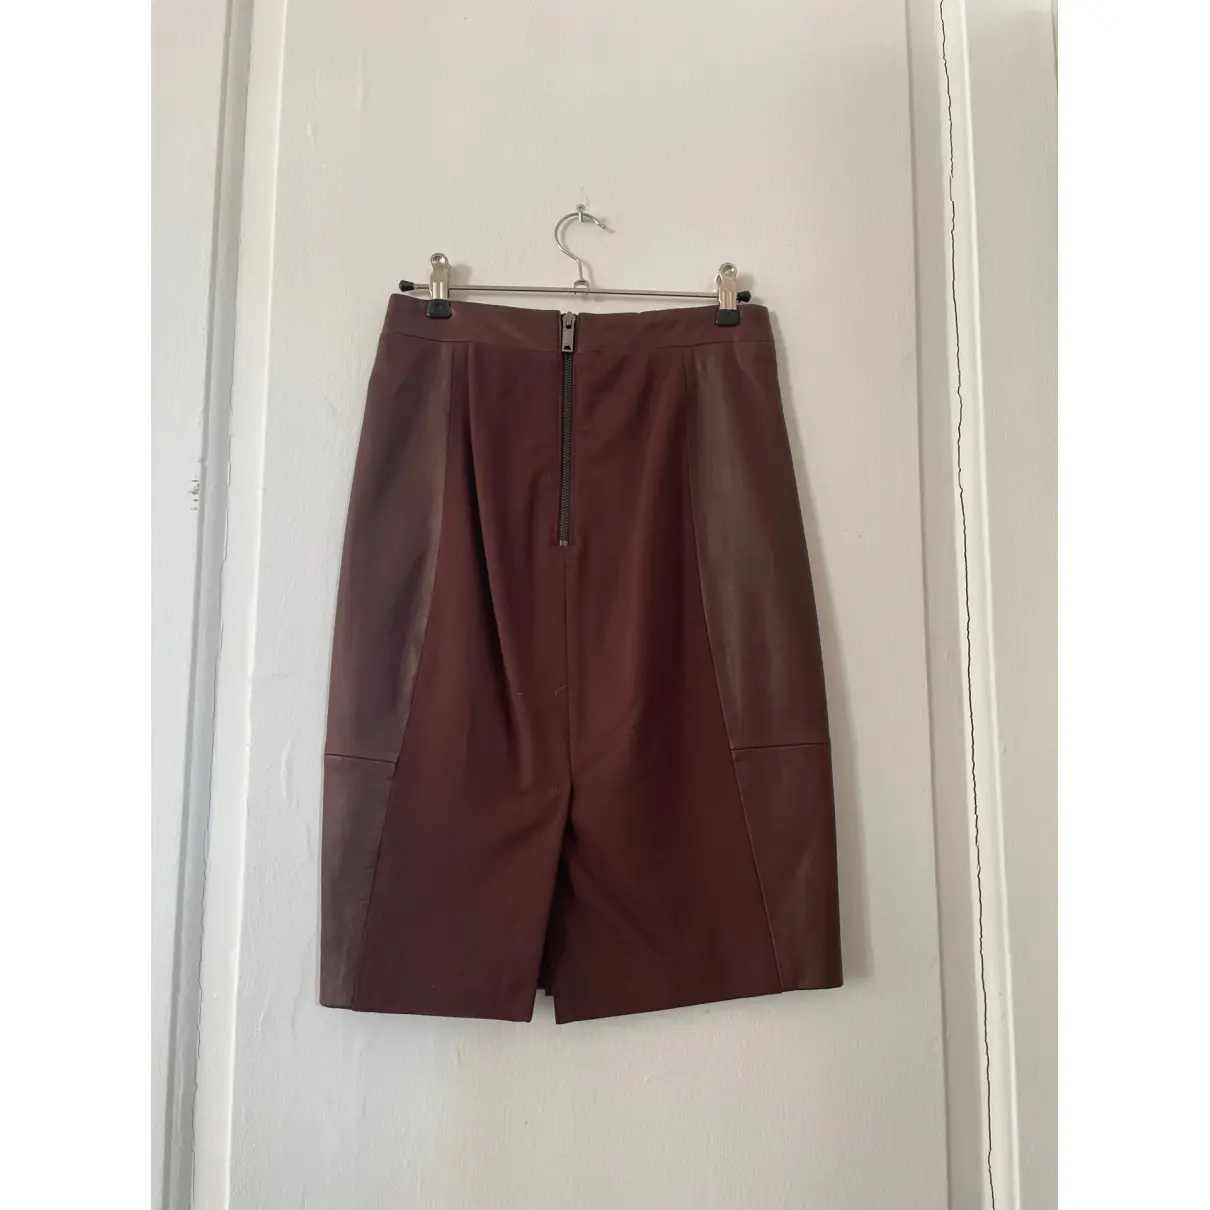 Buy Reiss Leather mid-length skirt online